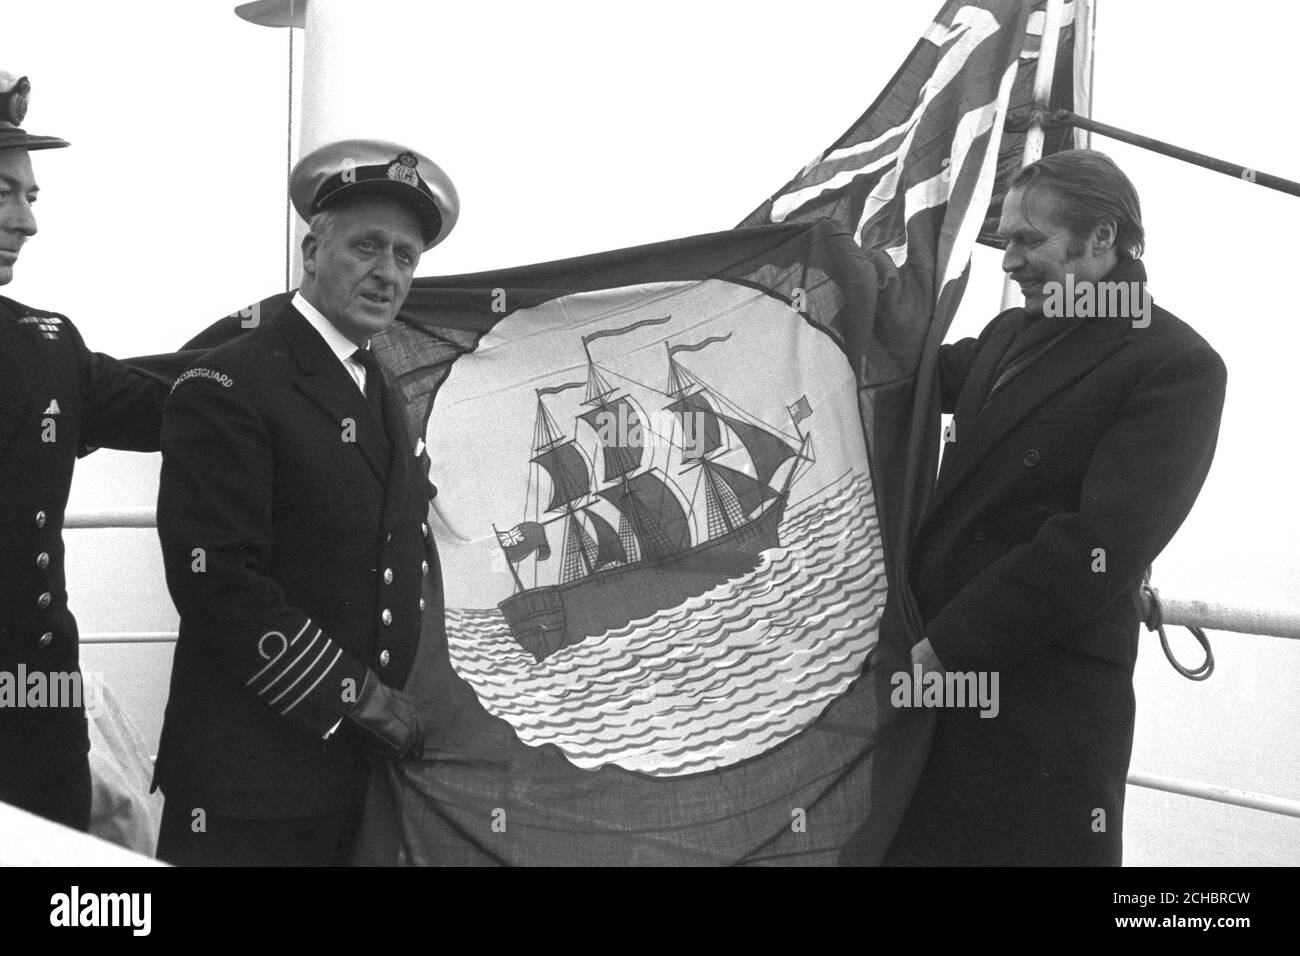 Anthony Grant (rechts), Parlamentarischer Staatssekretär für Handel und Industrie, beim "Brechen der Flagge" auf der 1,500 Tonnen schweren Miranda, die speziell als Mutterschiff und Krankenhausschiff für die Fischereiflotte vor Island umgebaut wurde. Auf der linken Seite ist ihr Kommandant, Kapitän RKN Emden. Stockfoto